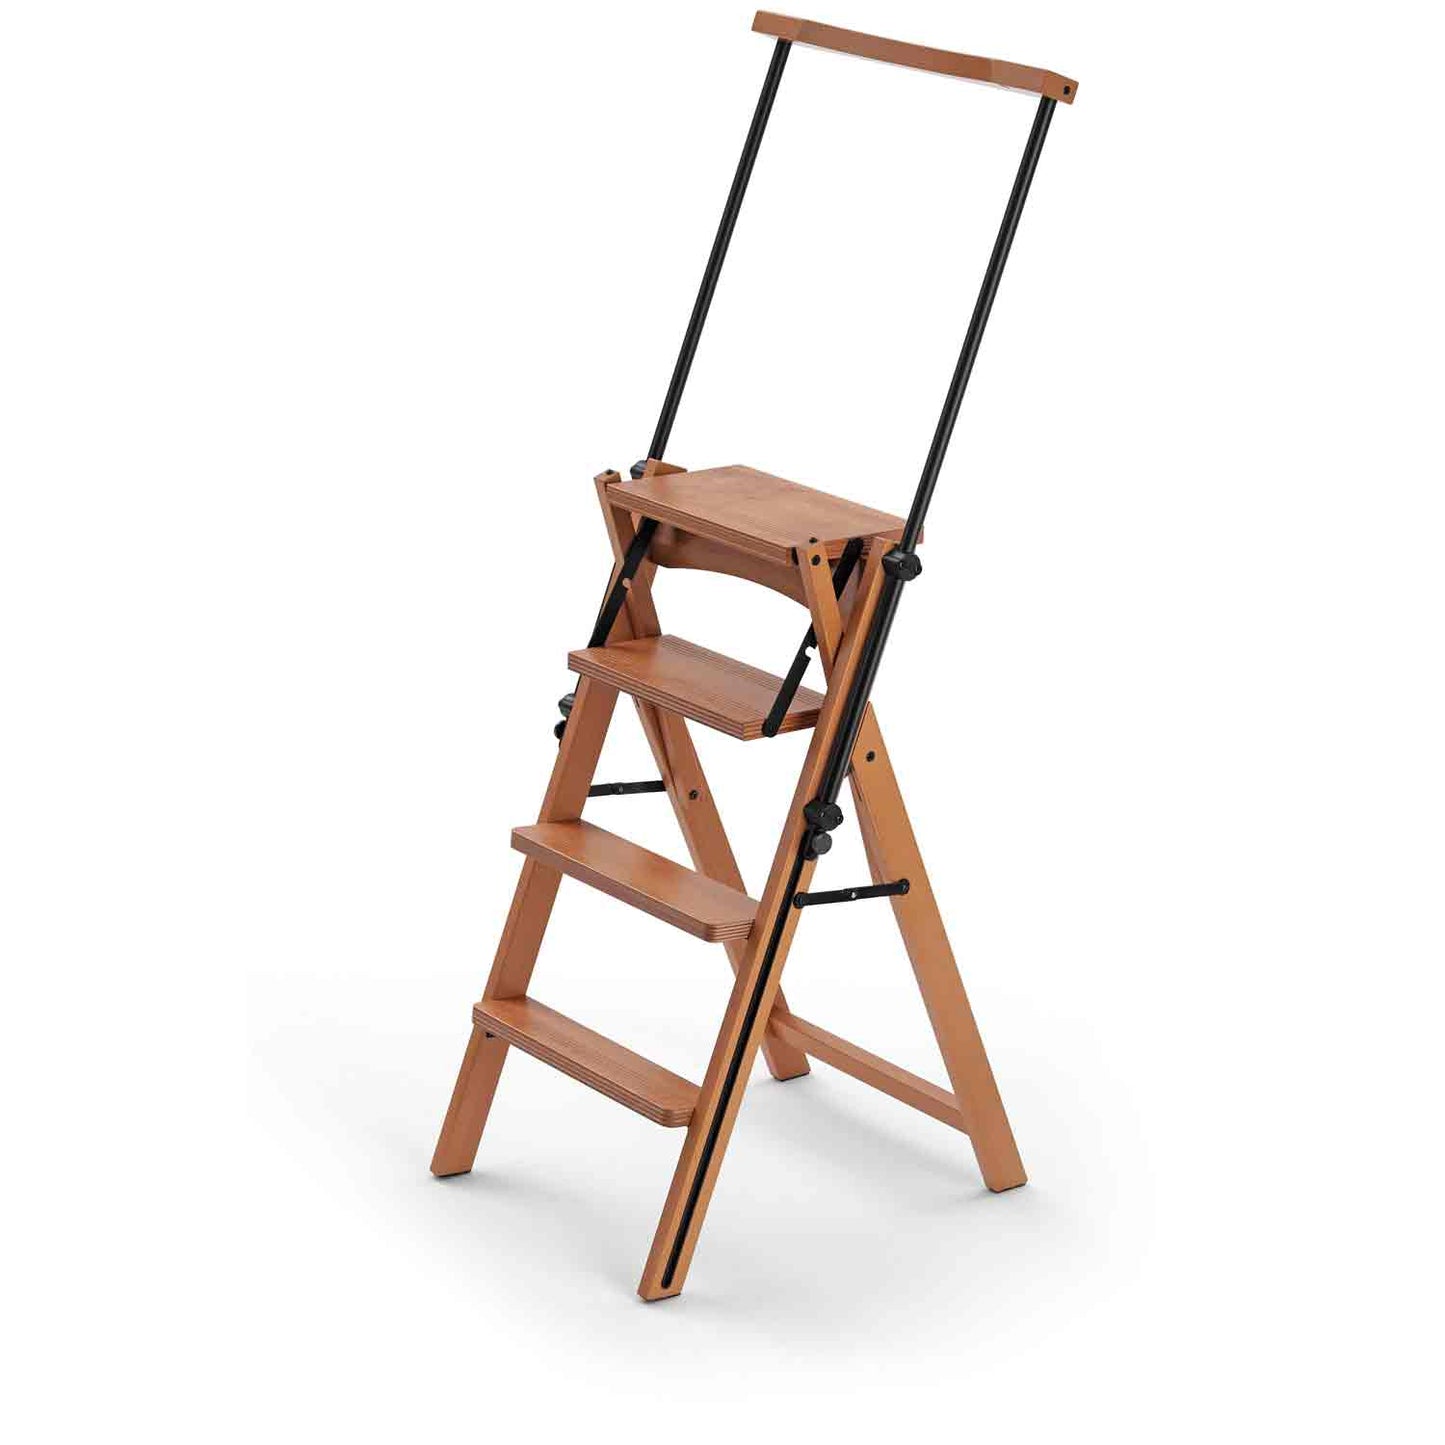 ELETTA - Leiter, Trittleiter, Trittleiter 4 stufen, umwandelbarer Stuhl, mit Sicherheitssystem, kirschfarben, 1